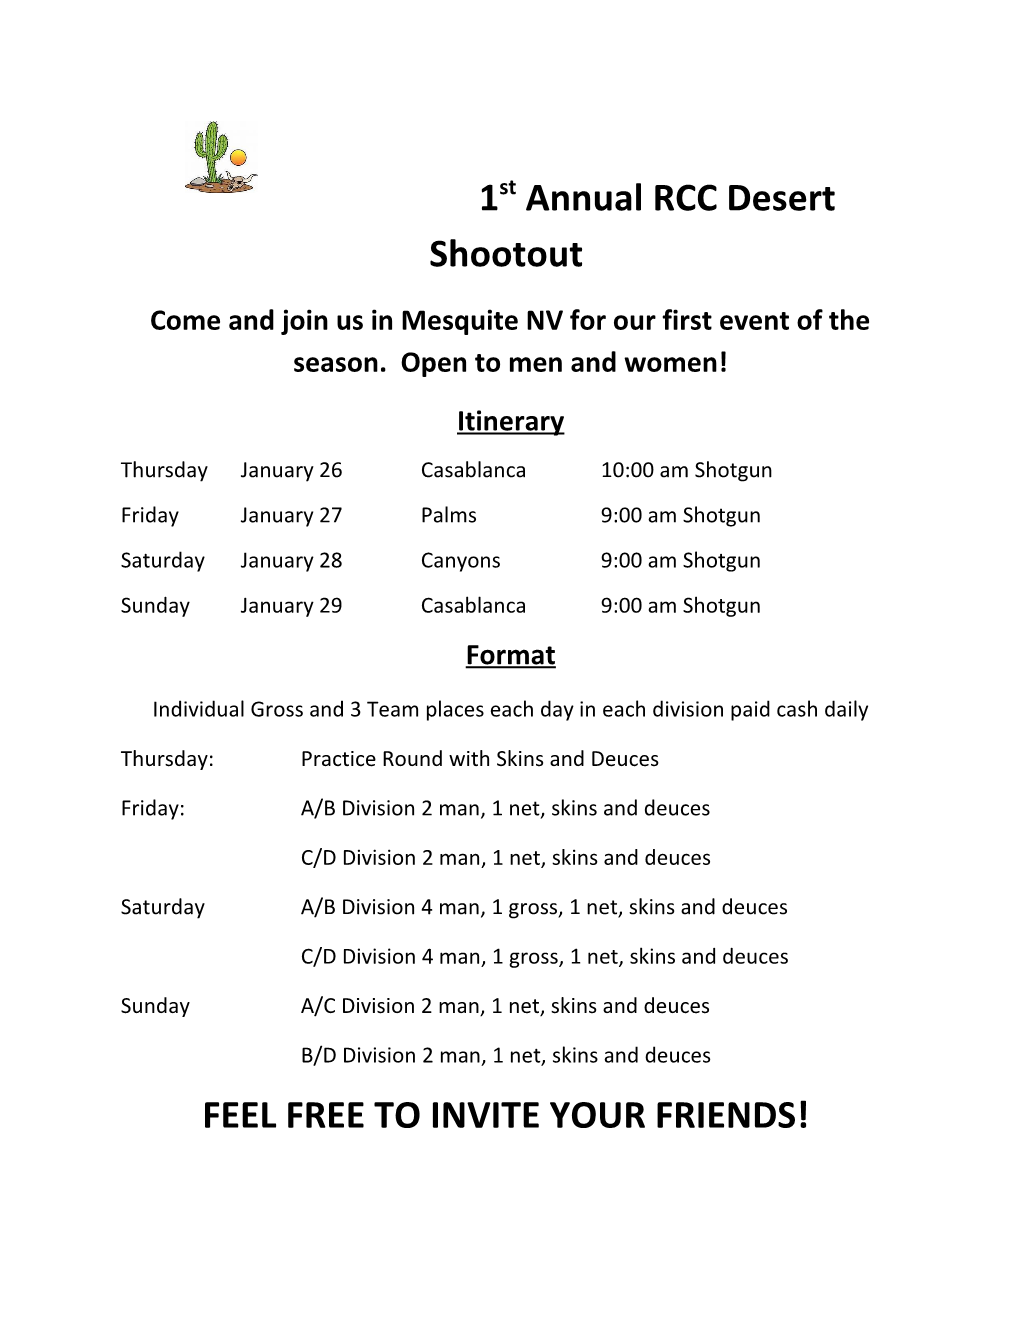 1St Annual RCC Desert Shootout